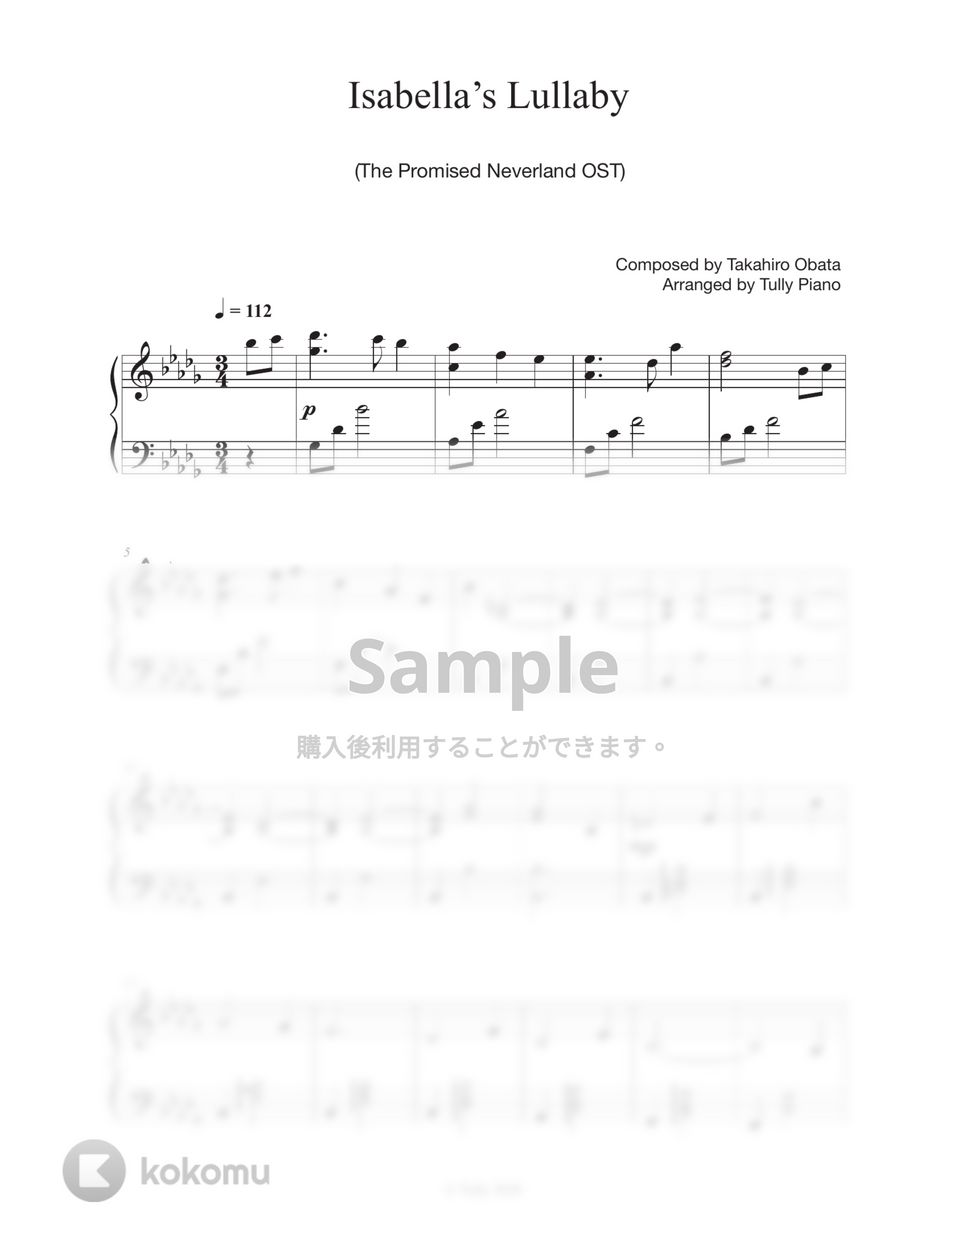 約束のネバーランド - イザベラの唄 by Tully Piano